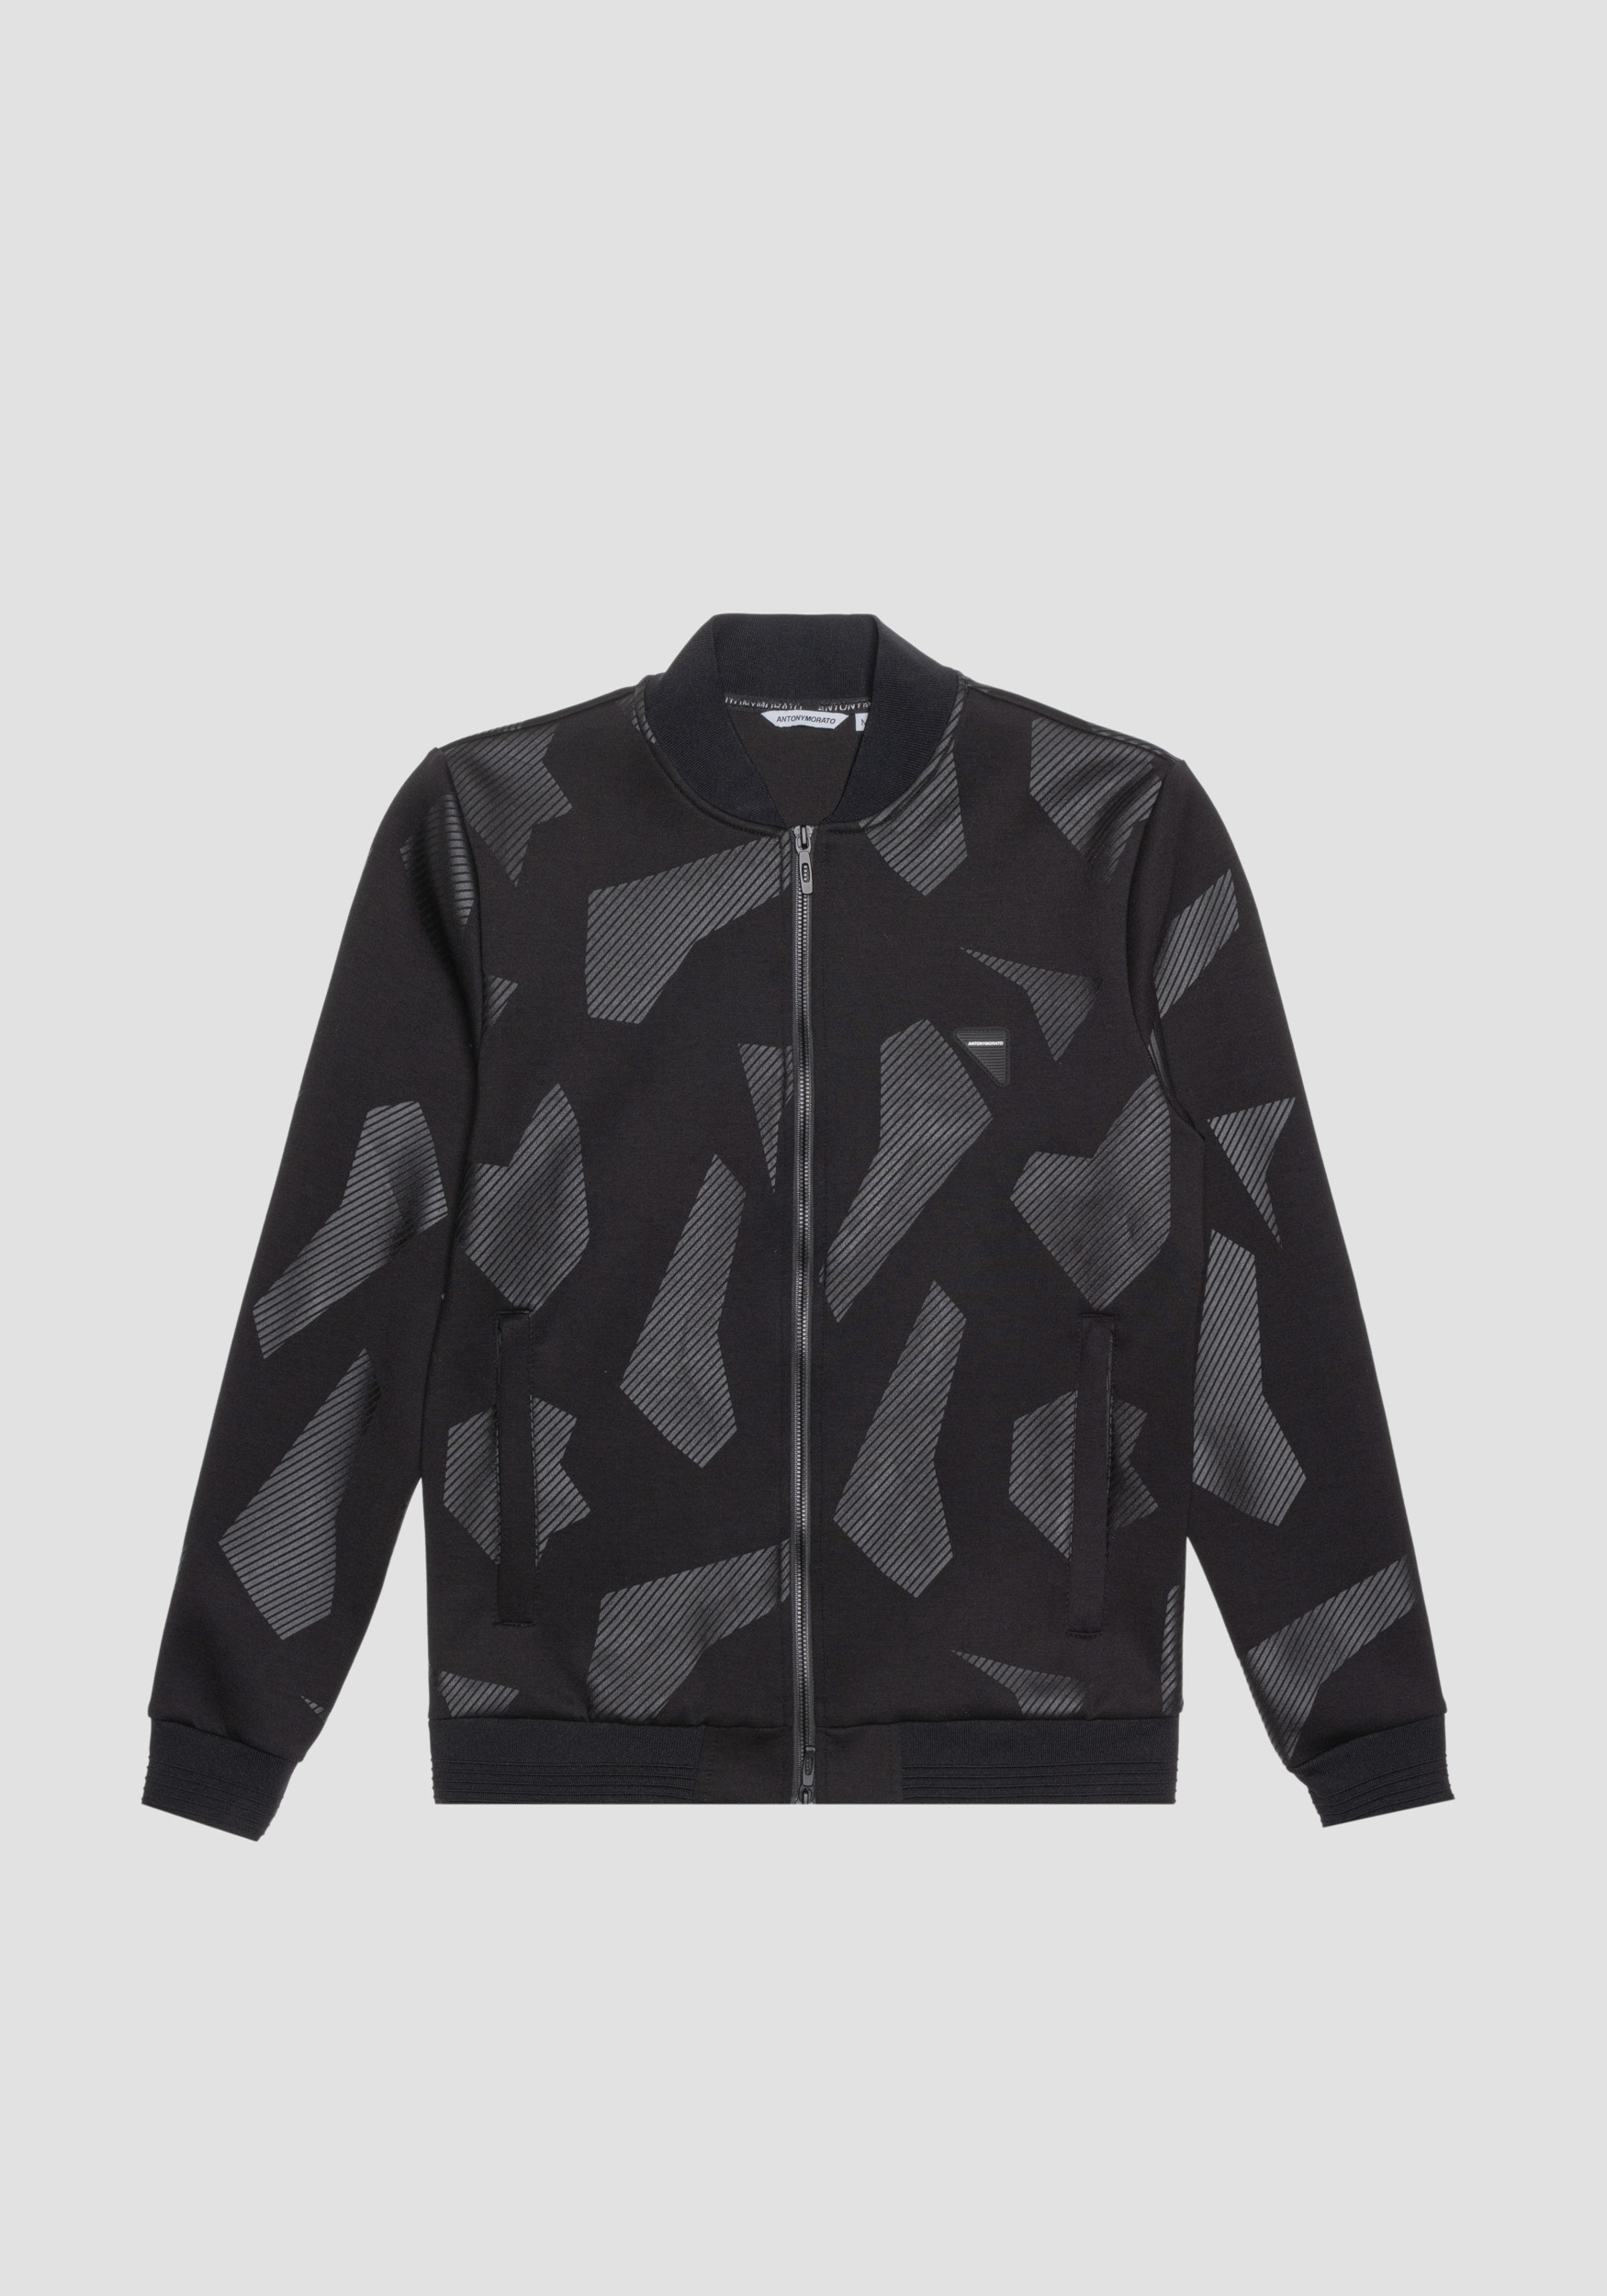 Antony Morato Sweat-Shirt Regular Fit En Scuba Elastique De Viscose Melangee Avec Imprime Geometrique Noir | Homme Sweat-Shirts